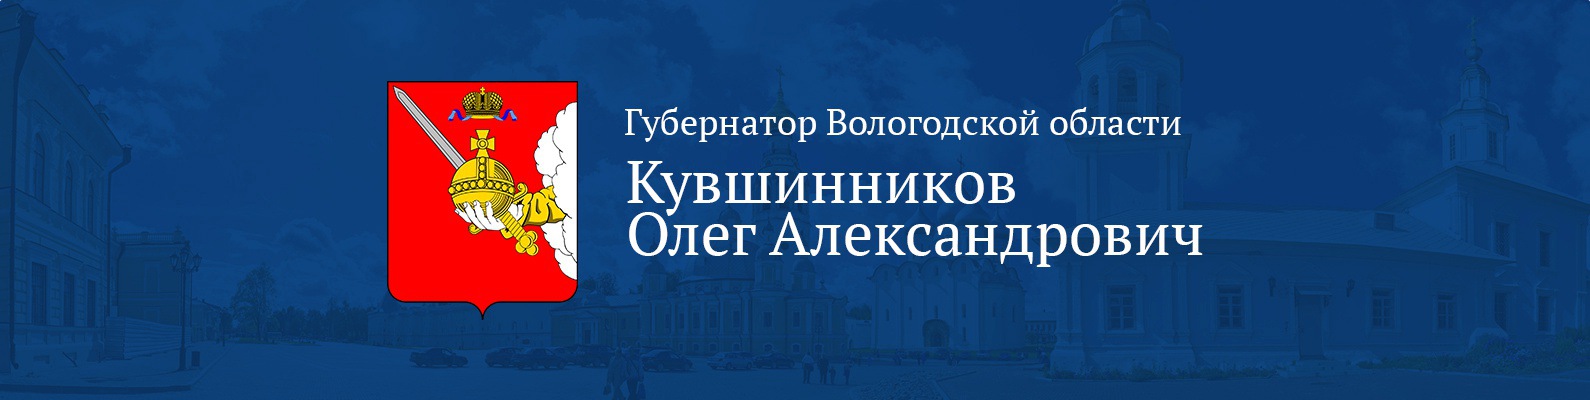 Сайт губернатора Вологодской области.